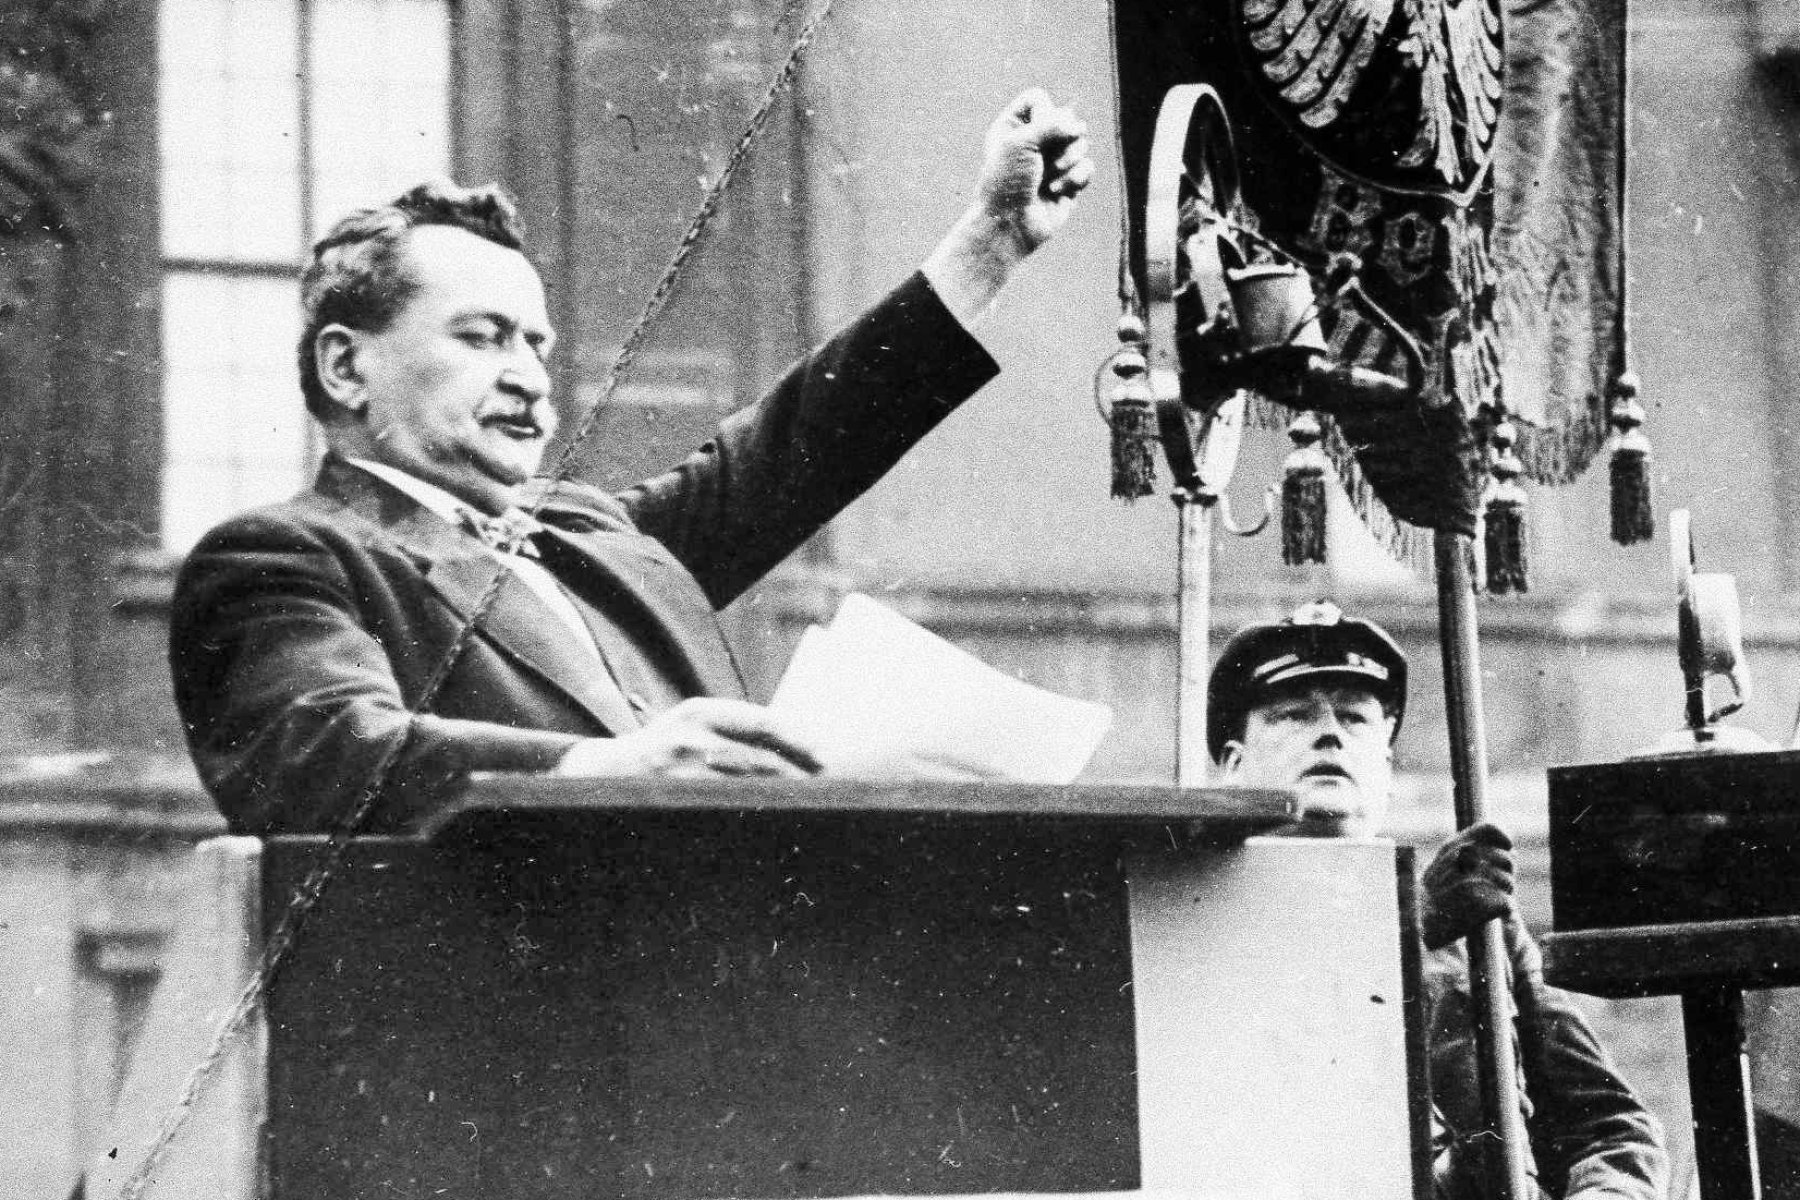 Freiheit und Leben kann man uns nehmen – die Ehre nicht. Otto Wels bei einer Rede vor dem Reichstag im März 1932